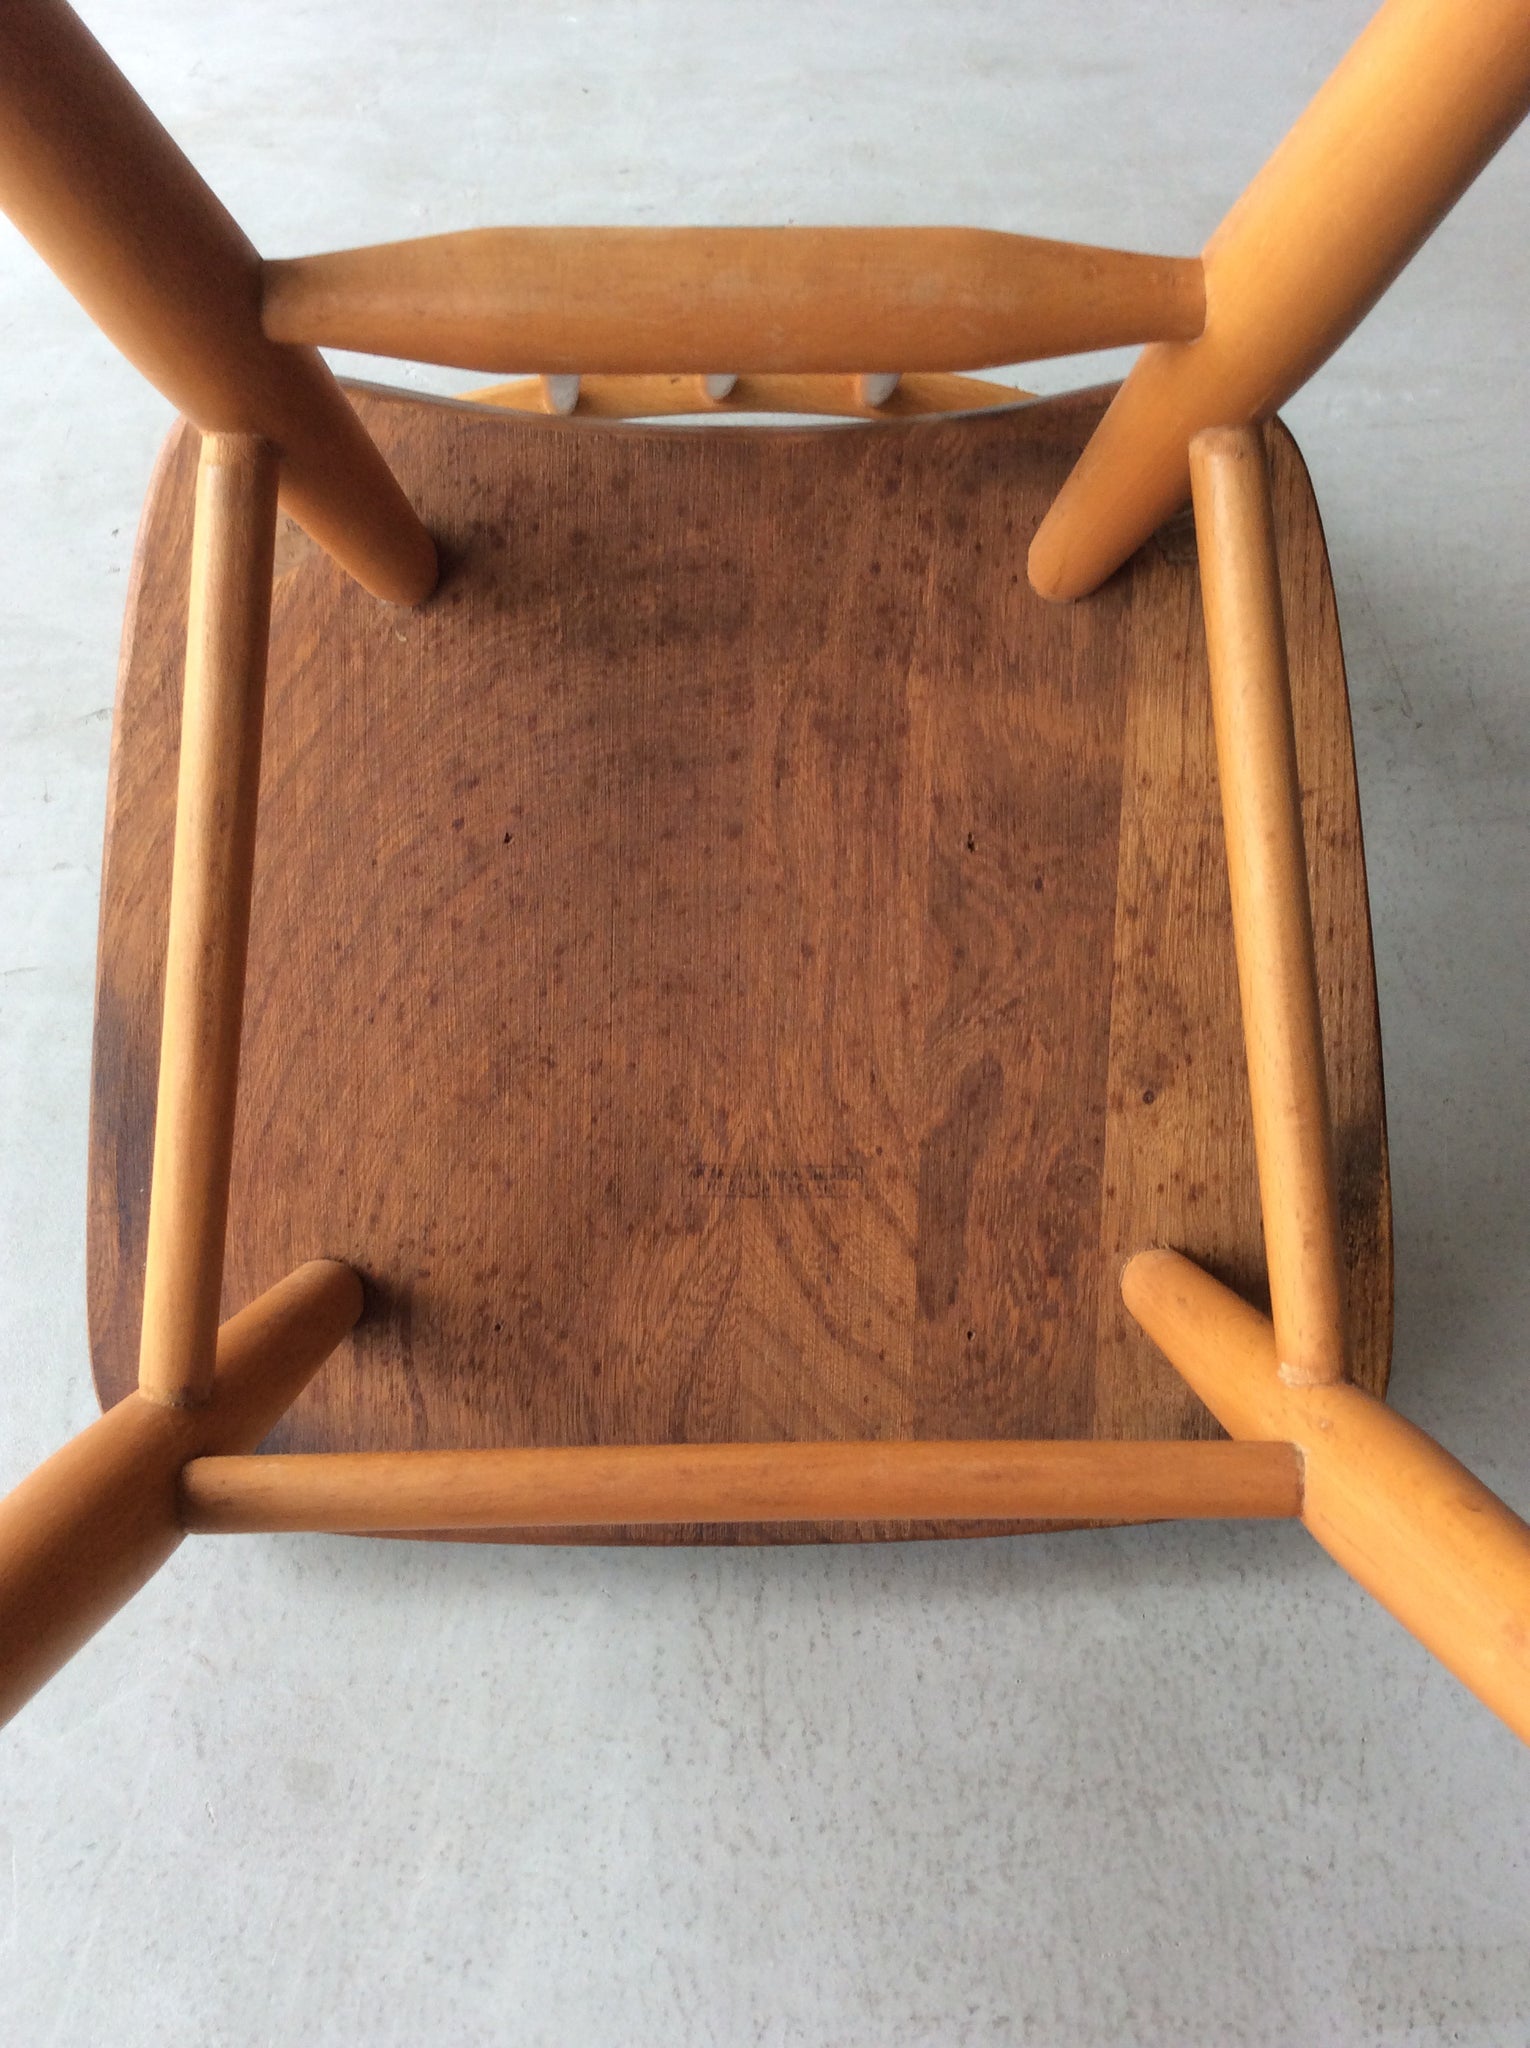 アーコール 'スティックバック' キッチン チェア / ercol 'stickback' kitchen chair '391' #0156